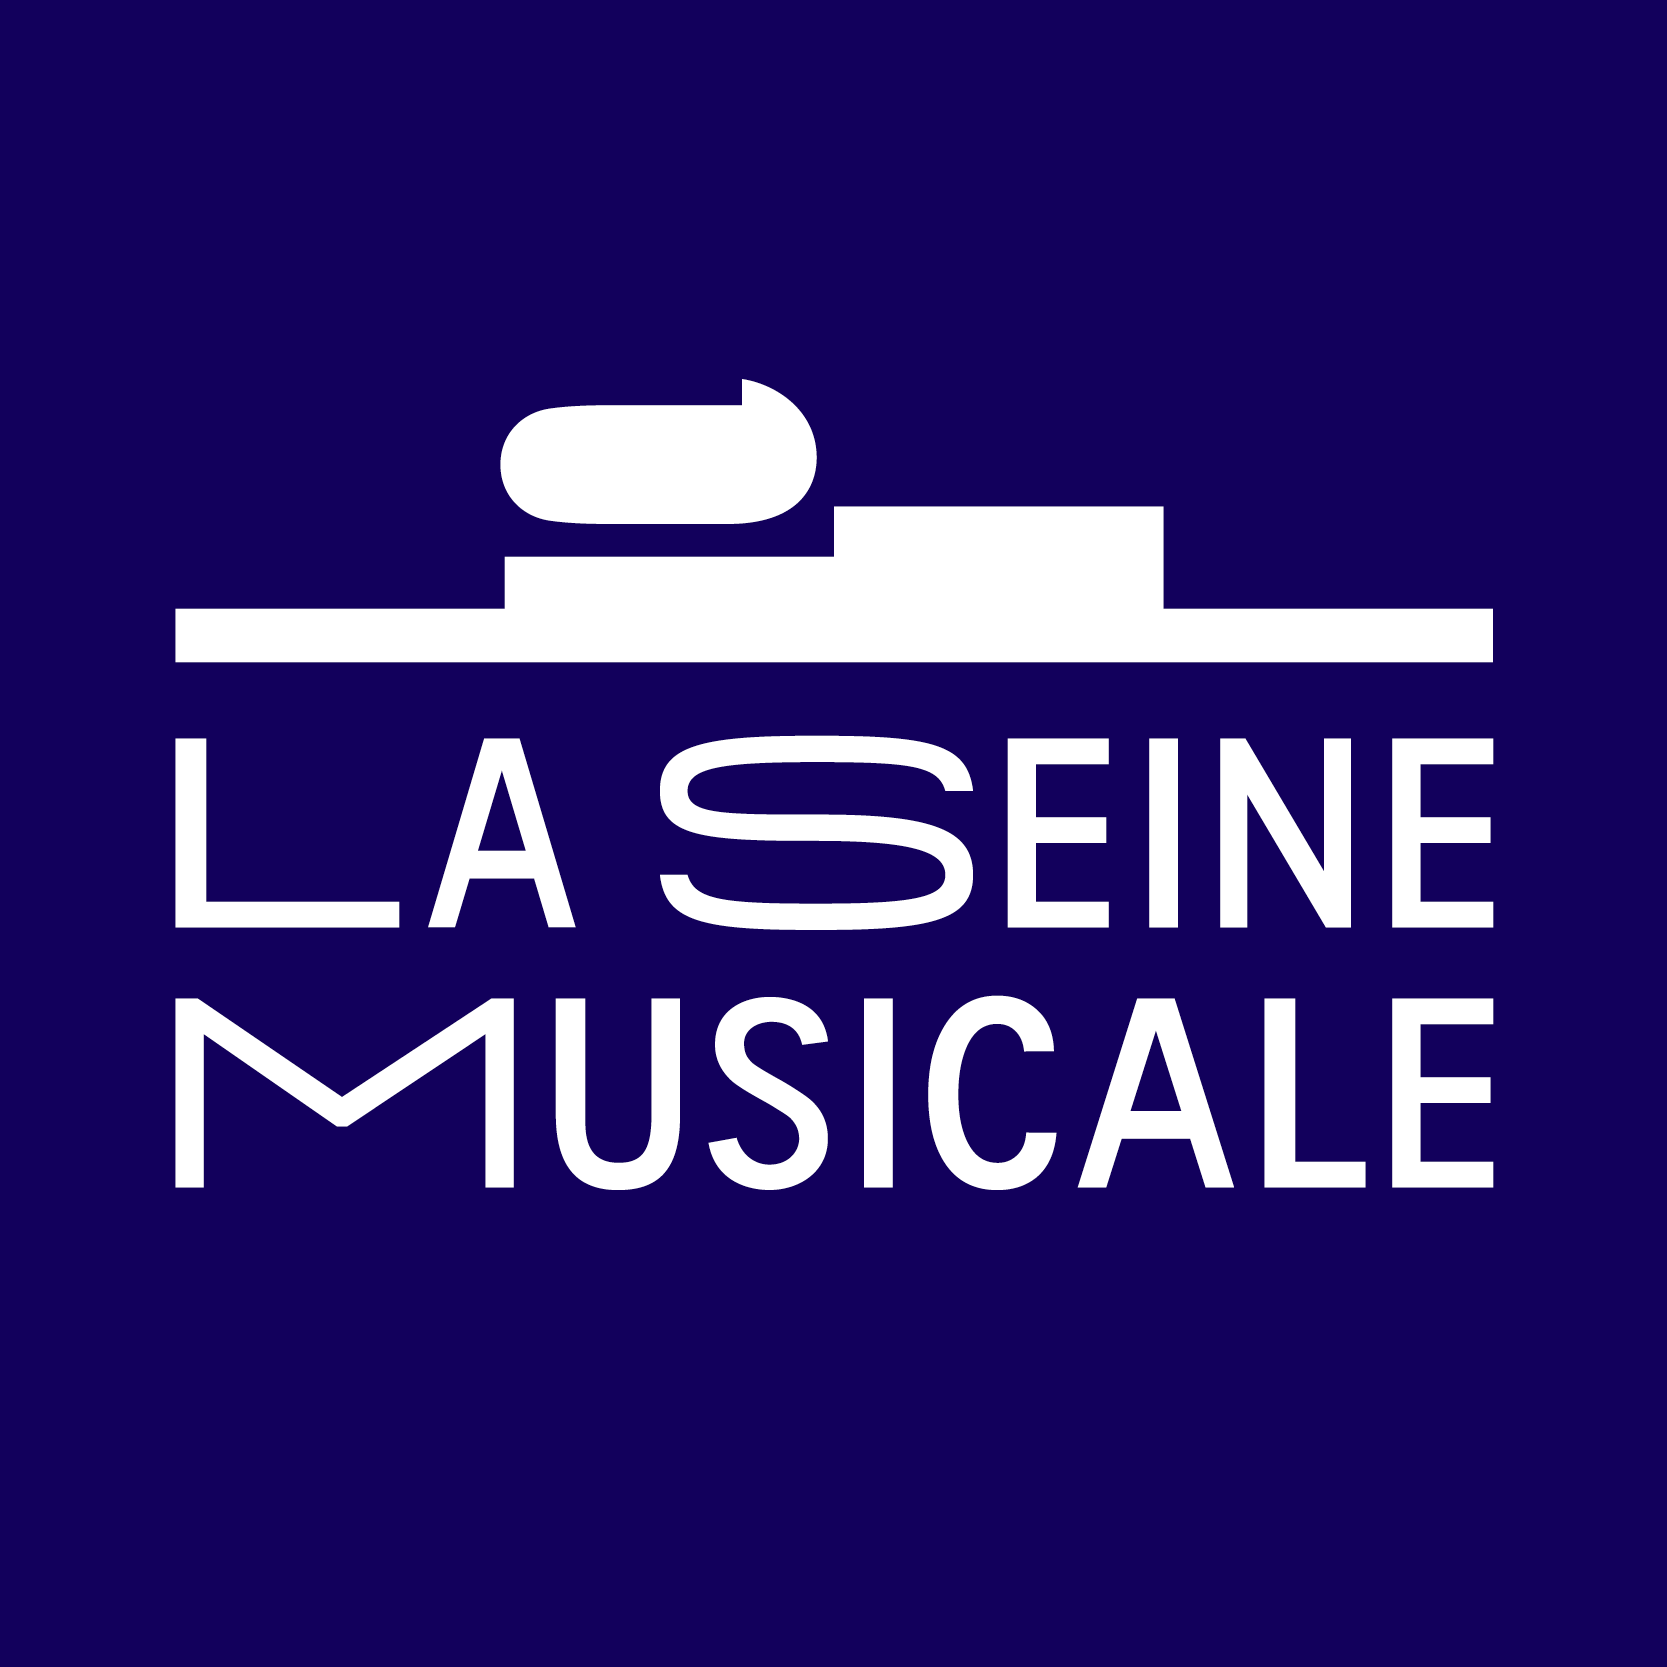 Insula Orchestra en La Seine Musicale Tickets